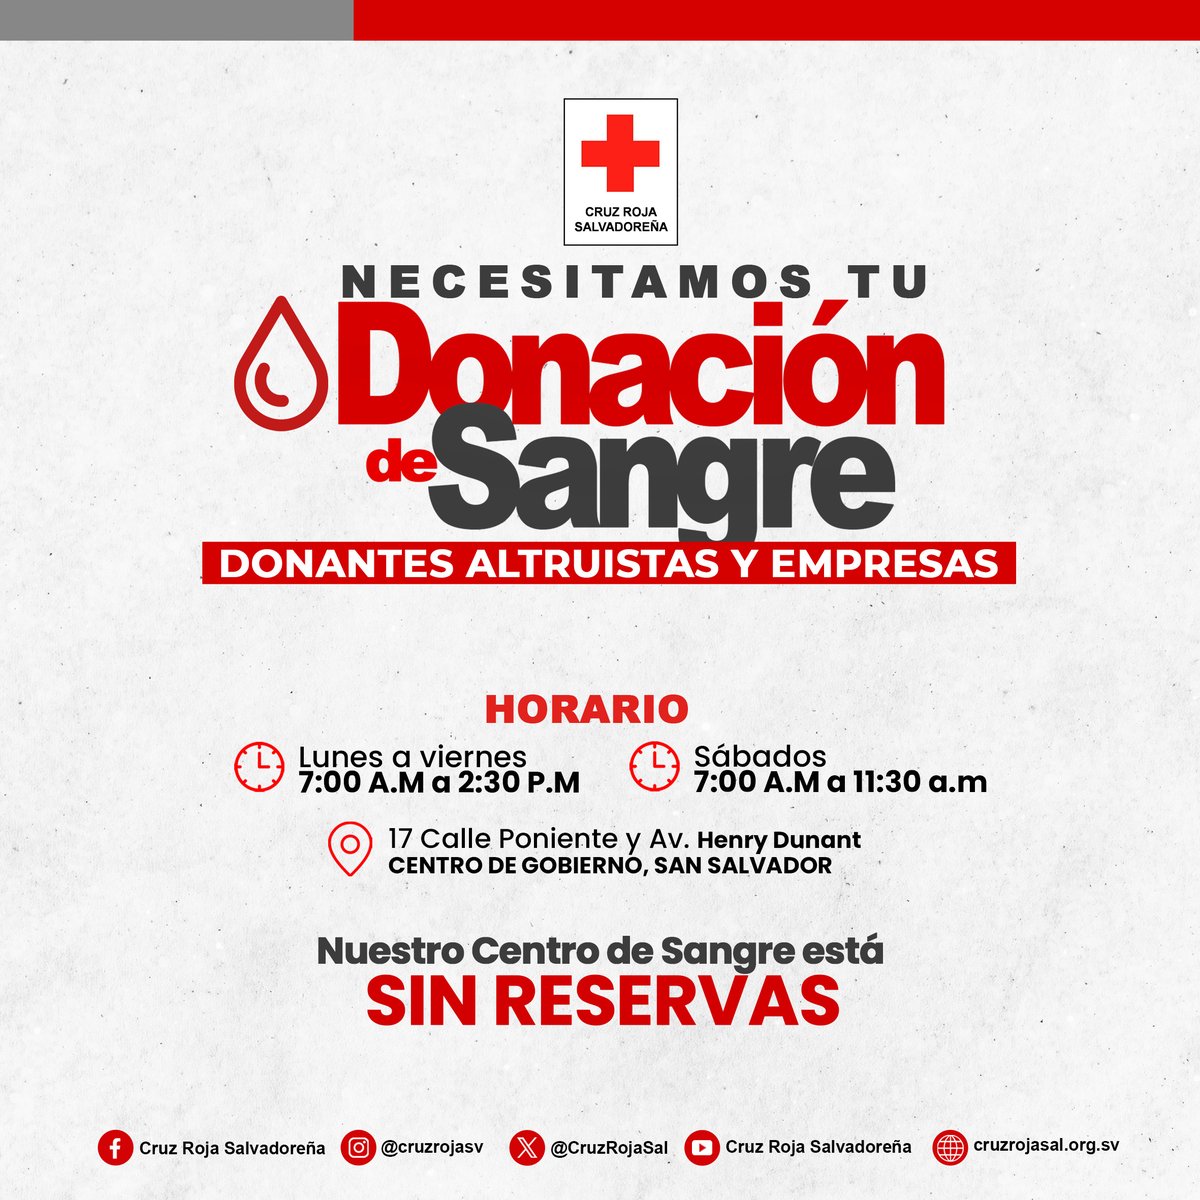 #DonacióndeSangre | Nuestro Centro de Sangre se encuentra sin reservas, necesitamos de tu donación altruista para continuar salvando vidas. #JuntosporlaHumanidad